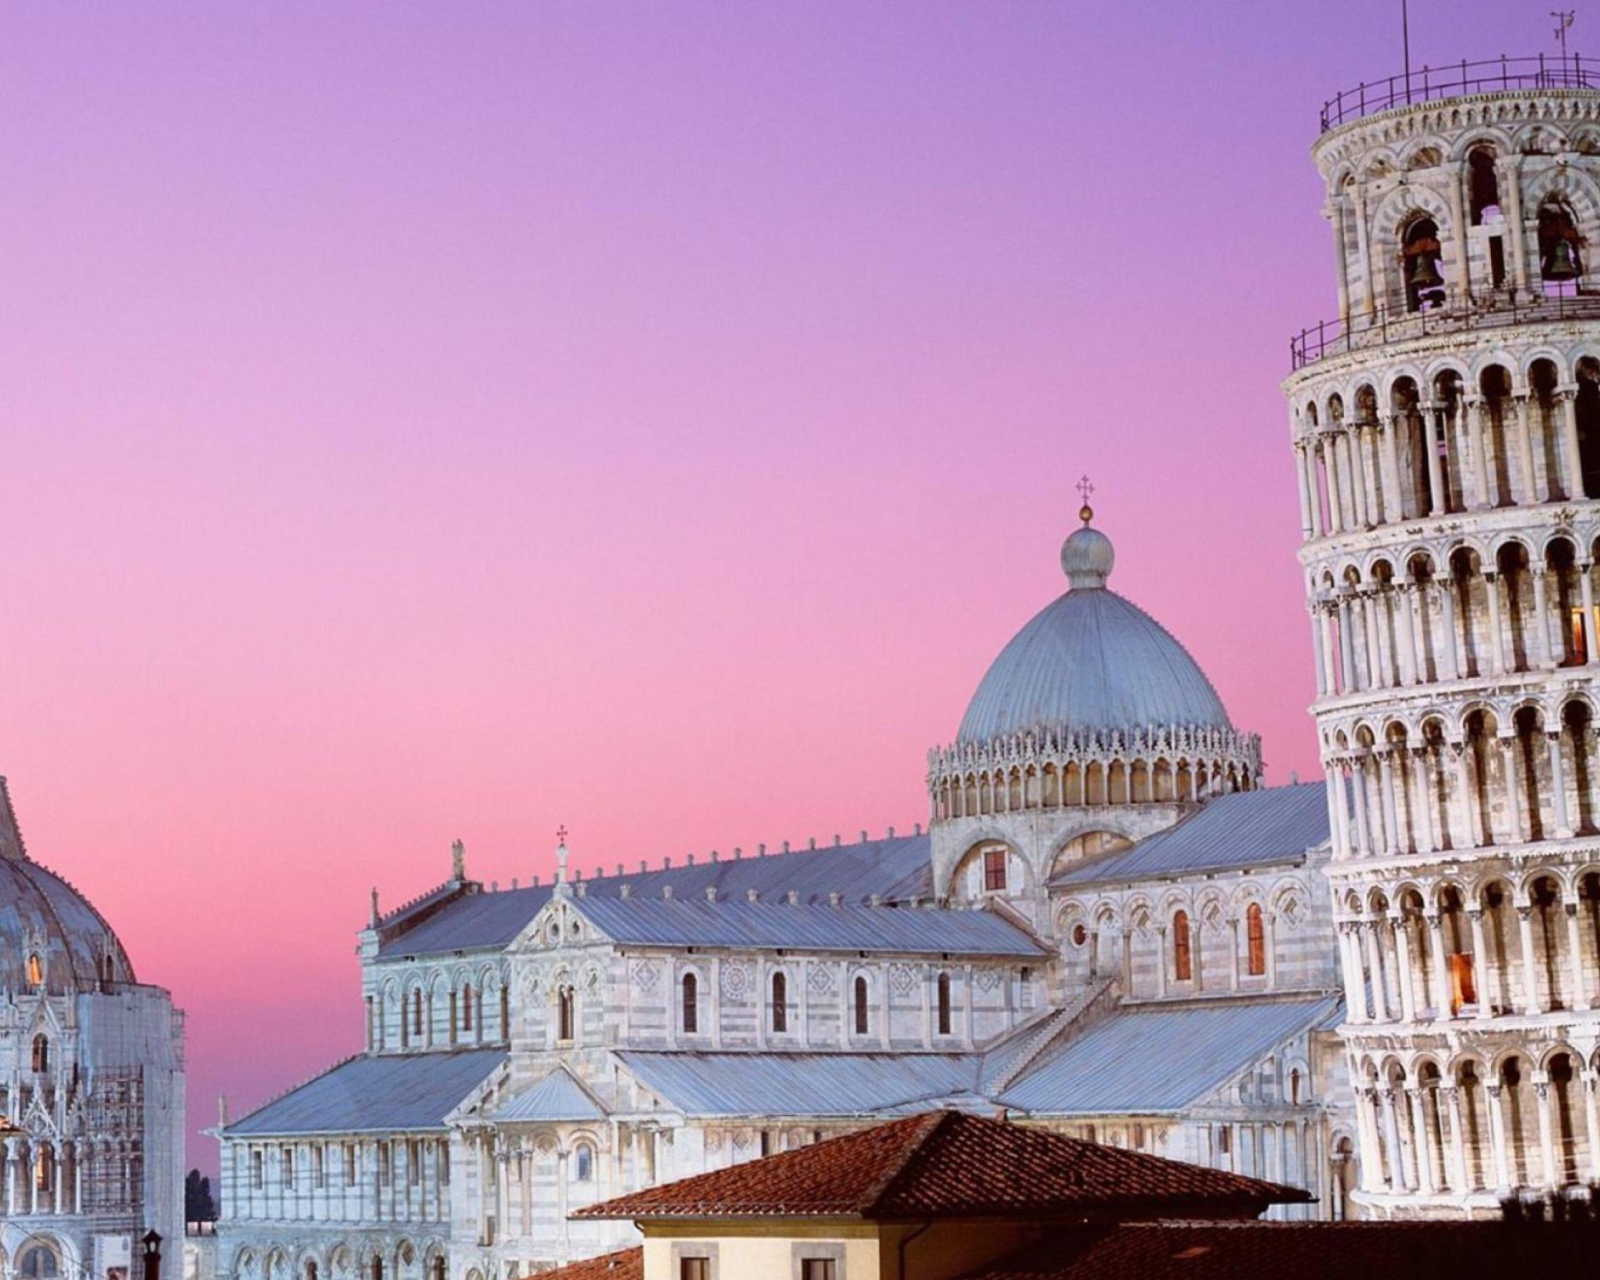 Tower of Pisa Italy screenshot #1 1600x1280